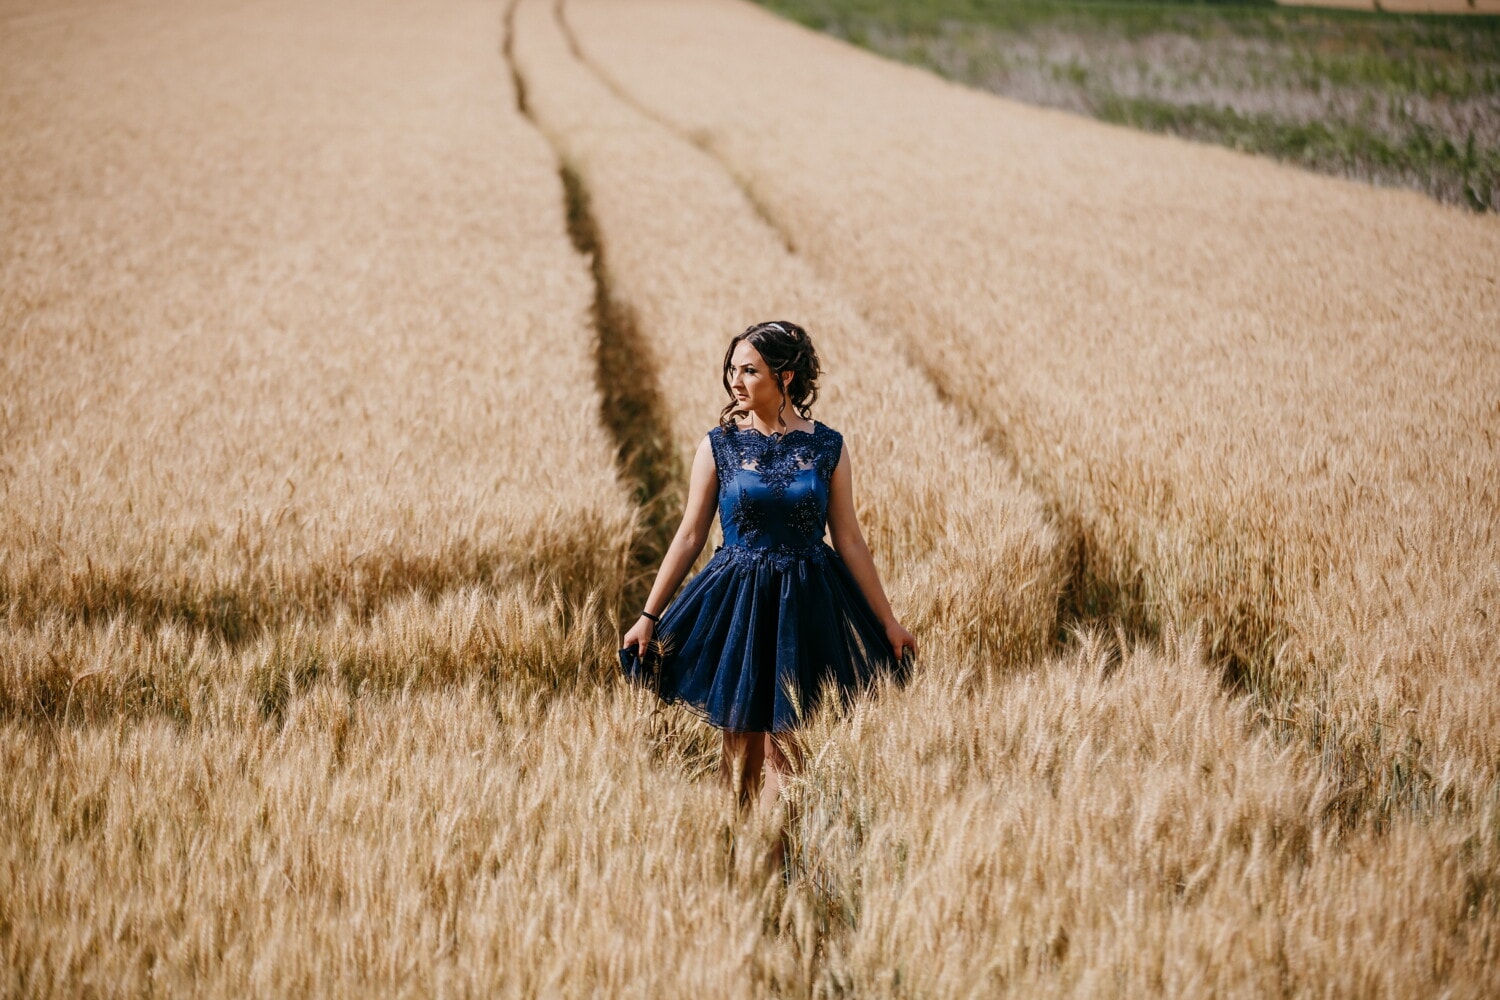 dress, blue, gorgeous, walking, pretty girl, wheatfield, summer, wheat, field, girl